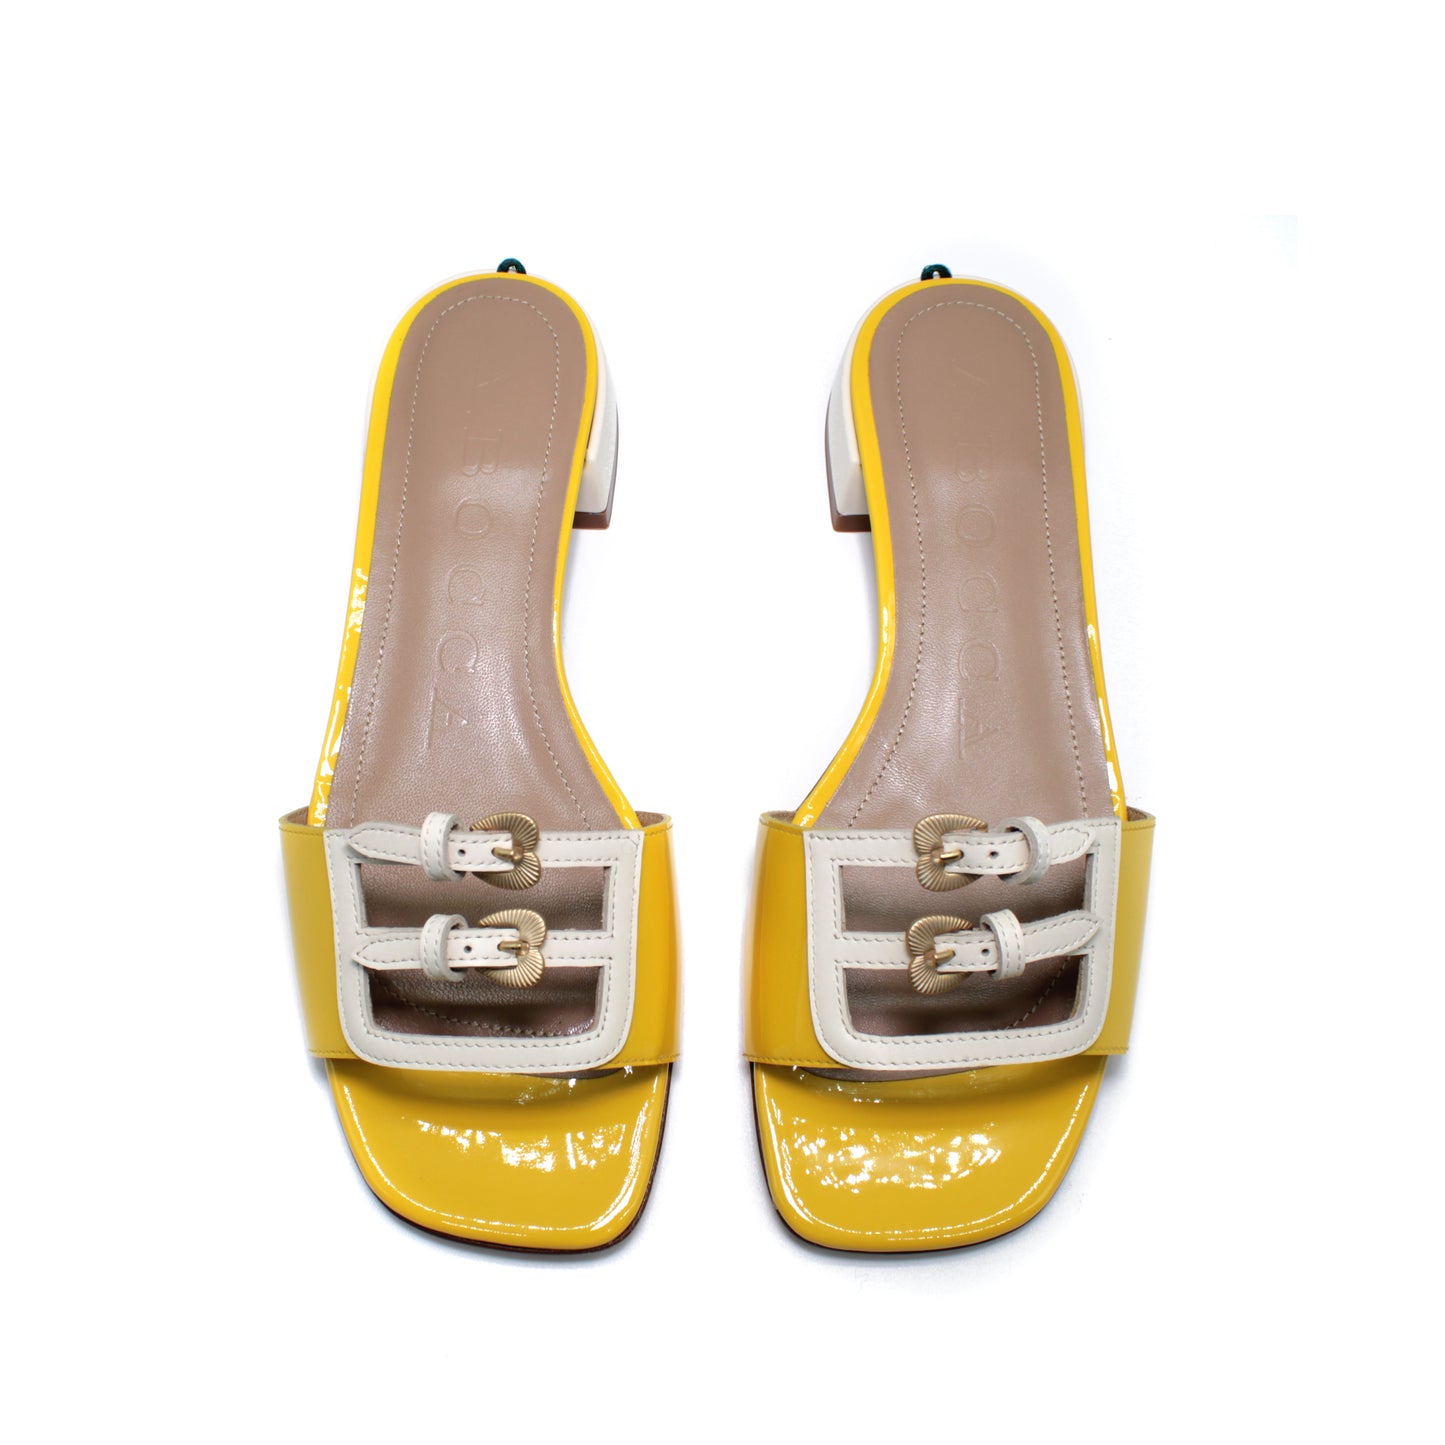 Sandalo in vernice bicolore giallo/gesso